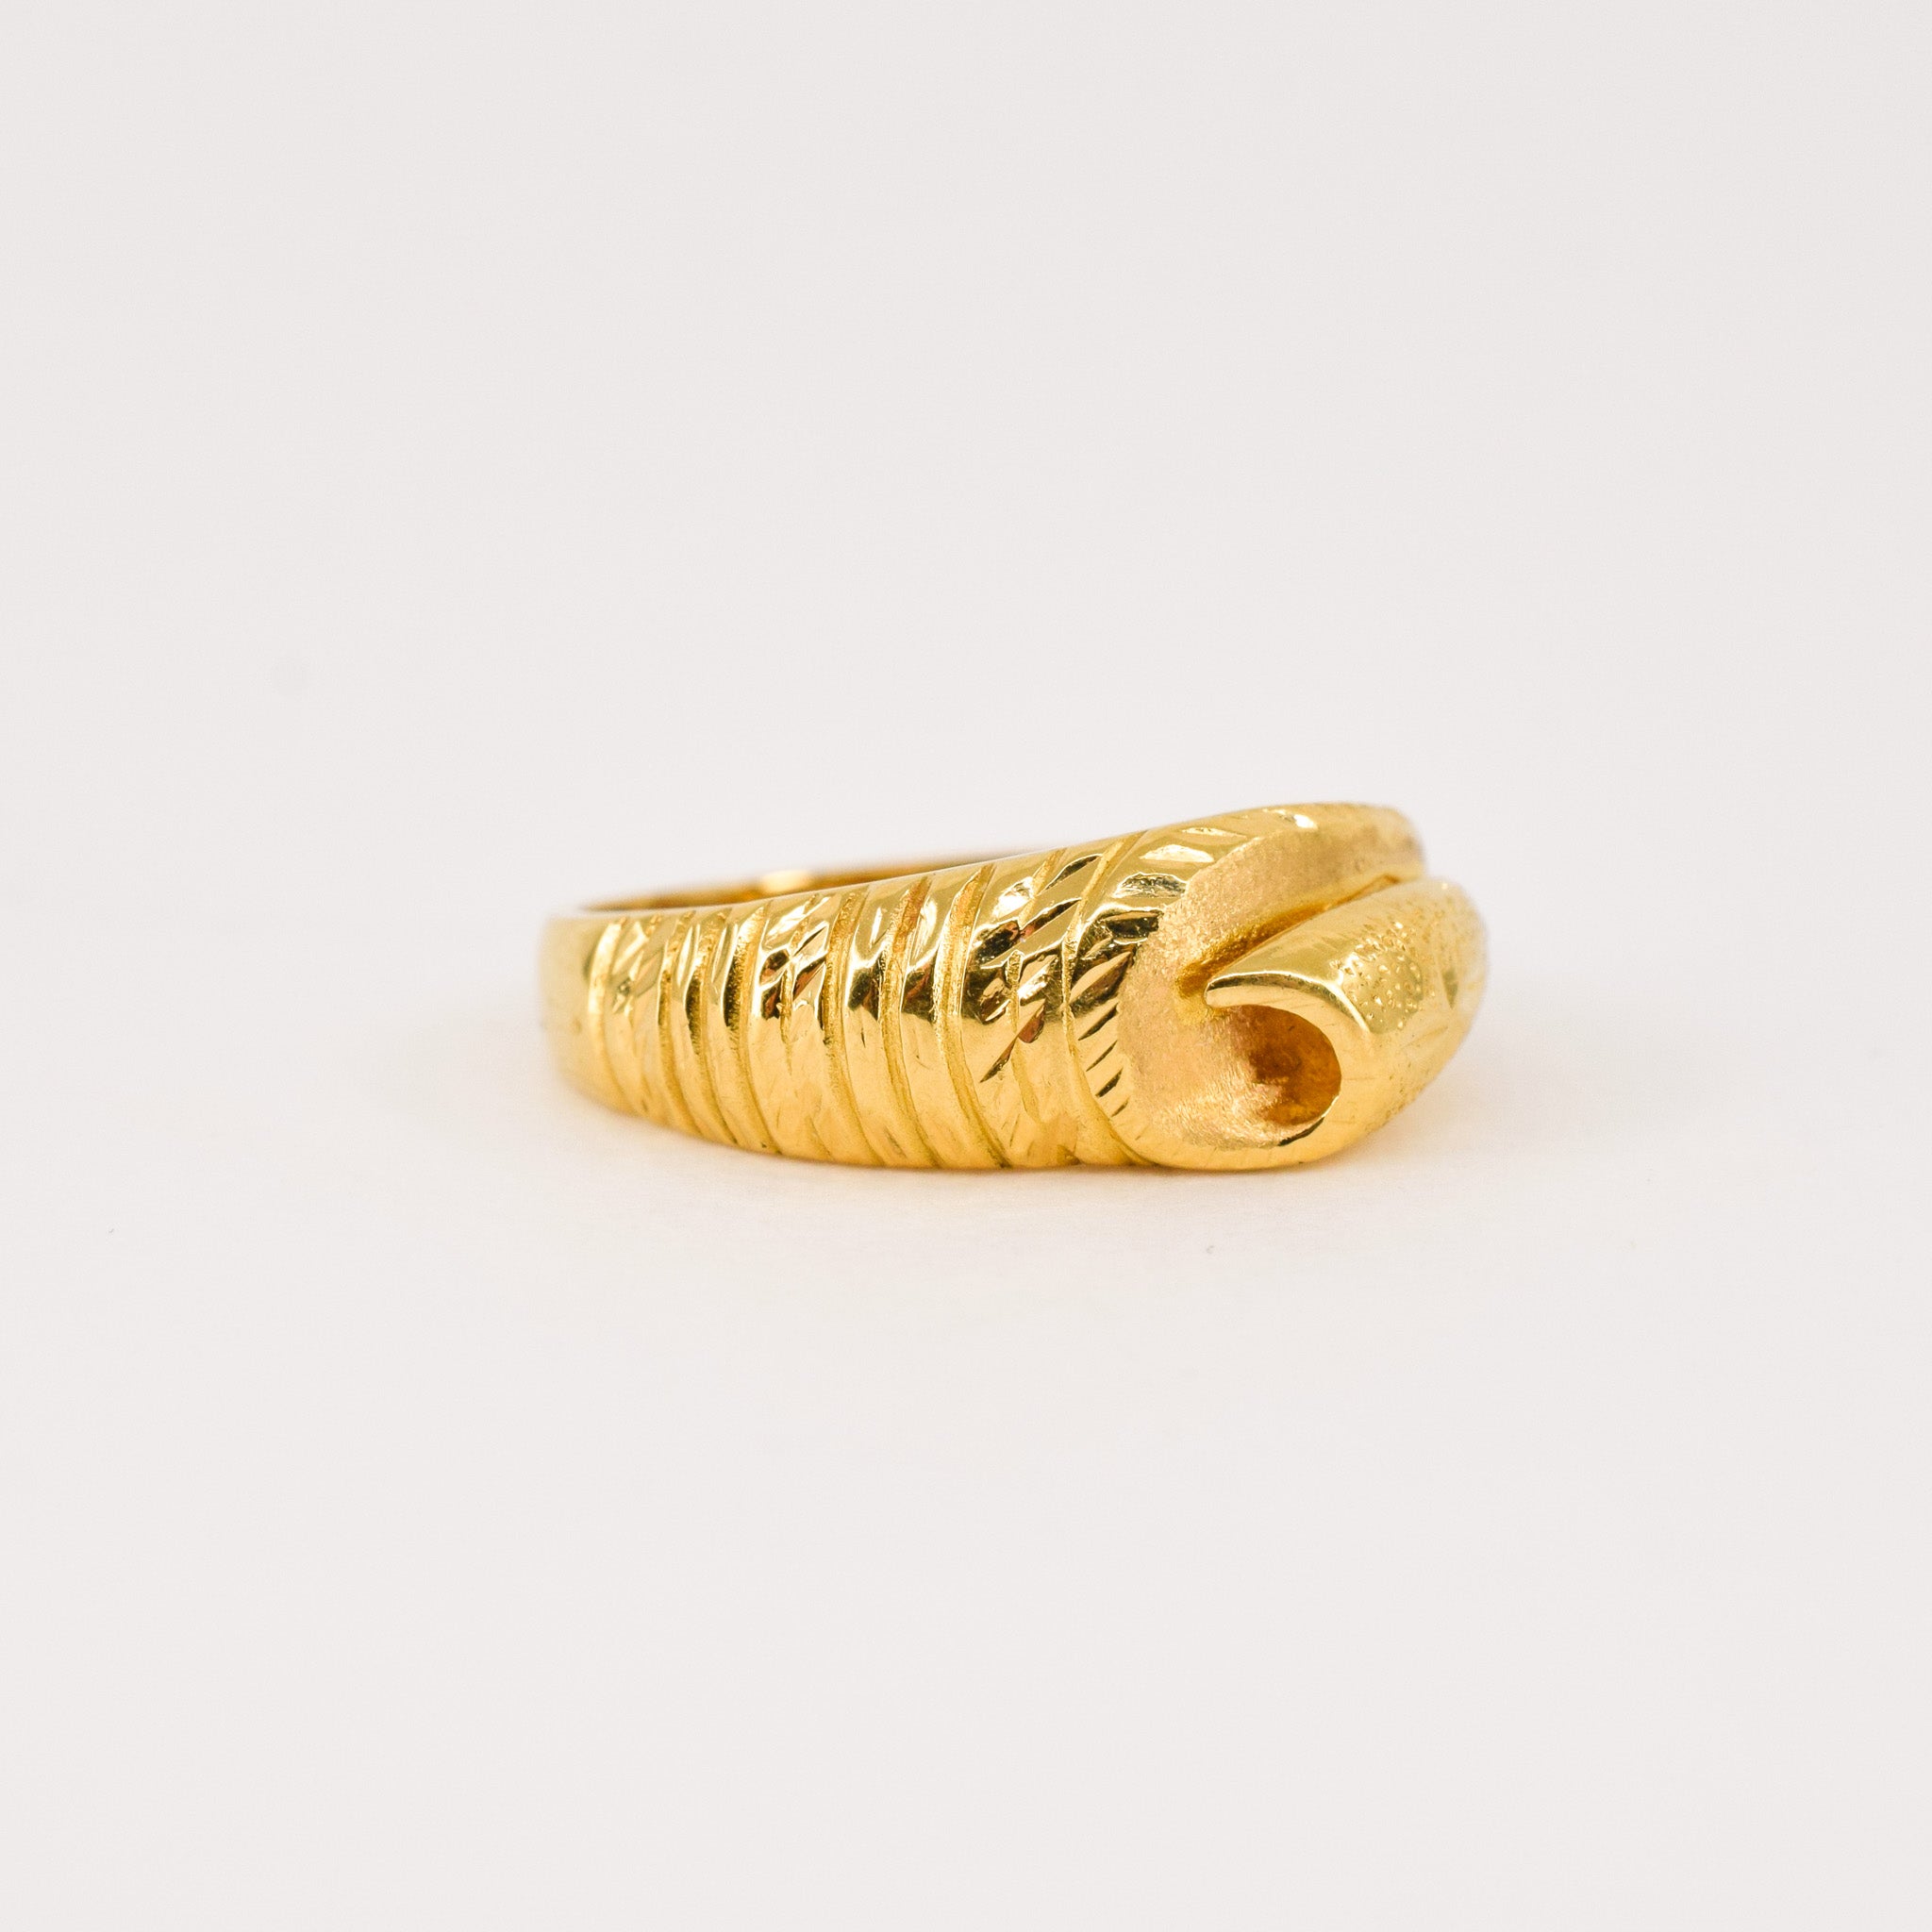 vintage 22k gold ring, folklor 